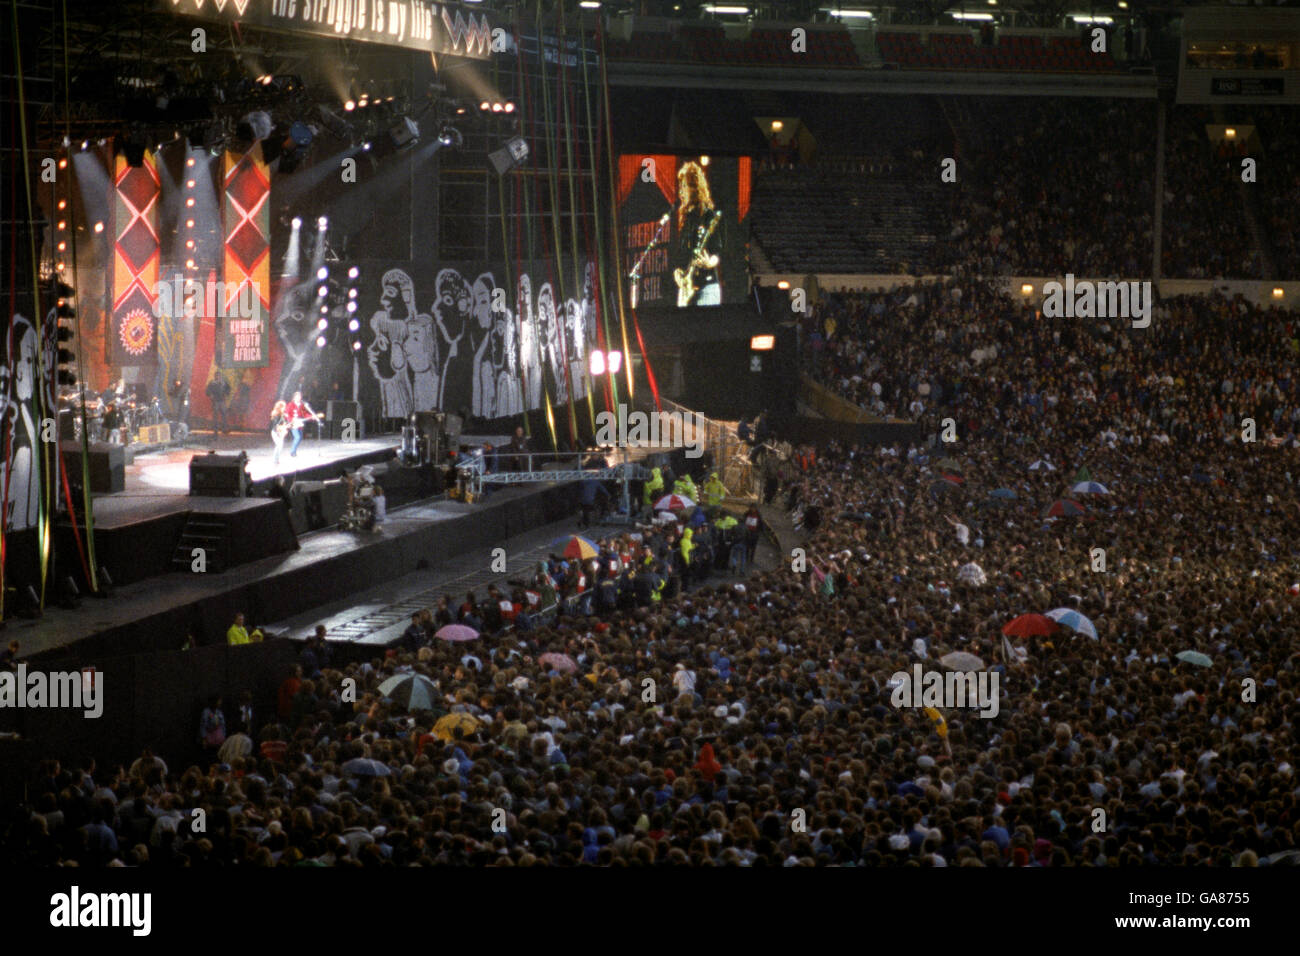 Beim Nelson-Mandela-Konzert im Wembley-Stadion fällt heute Abend die Nacht auf die riesige Menschenmenge. Stockfoto